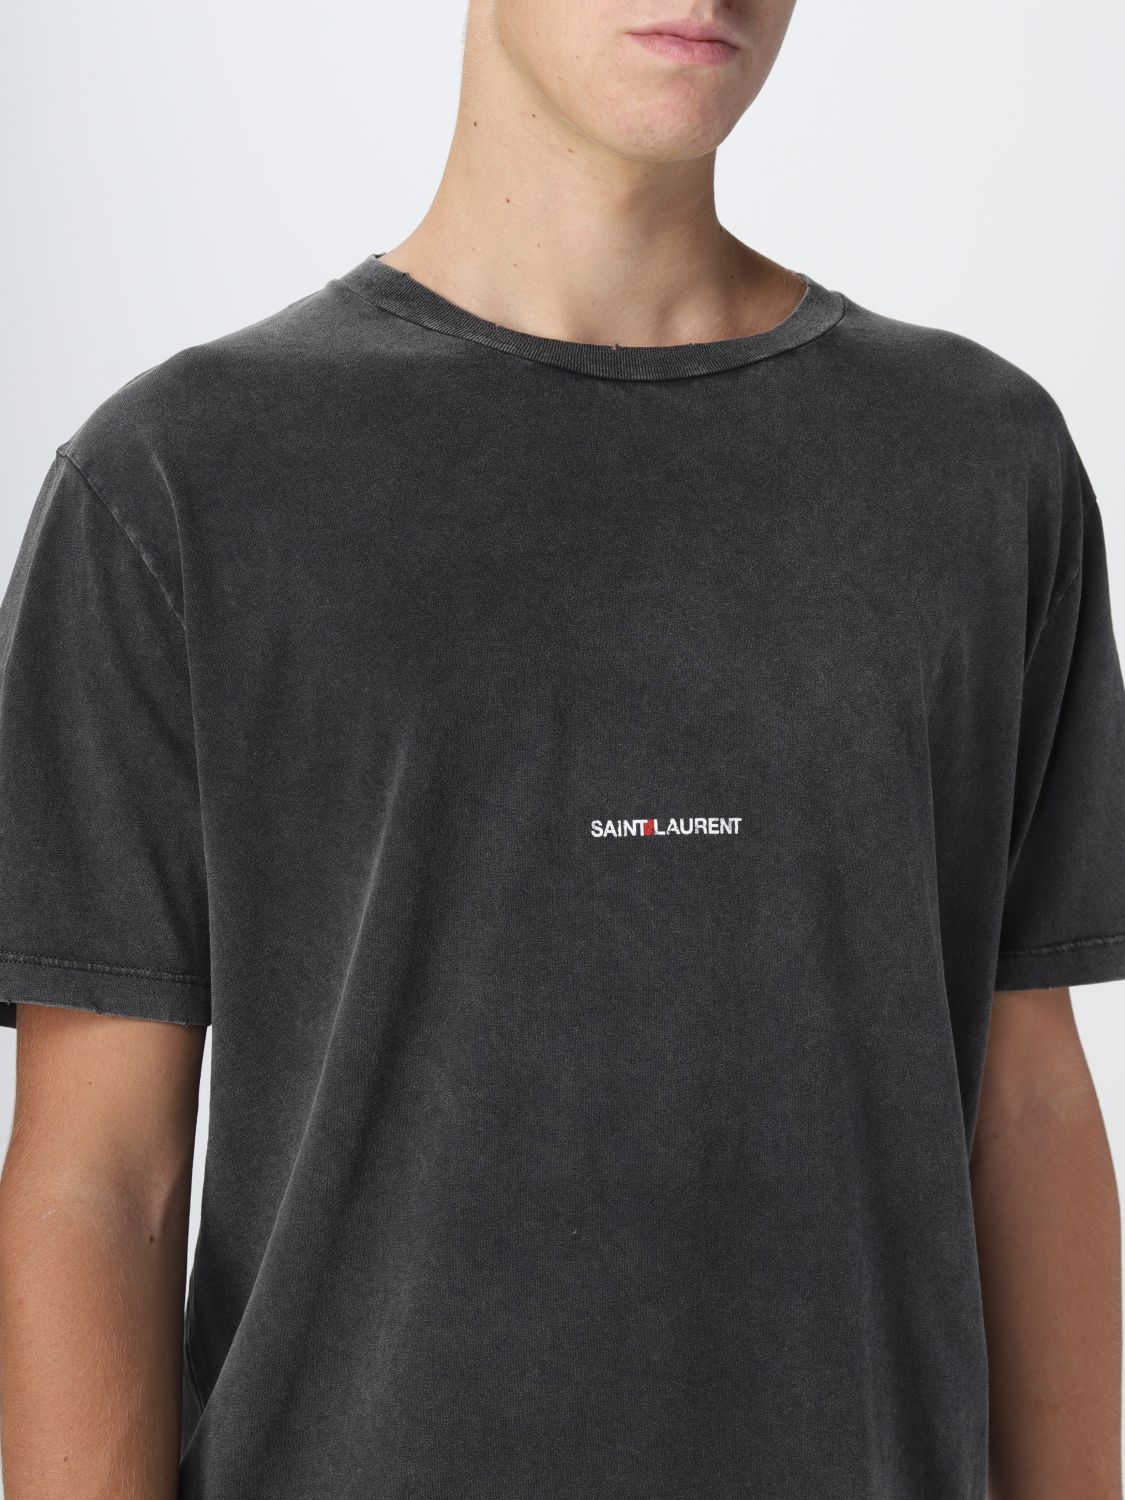 Saint Laurent Tシャツ メンズ ブラック Giglio Comオンラインのsaint Laurent Tシャツ 4981 Yb2lo